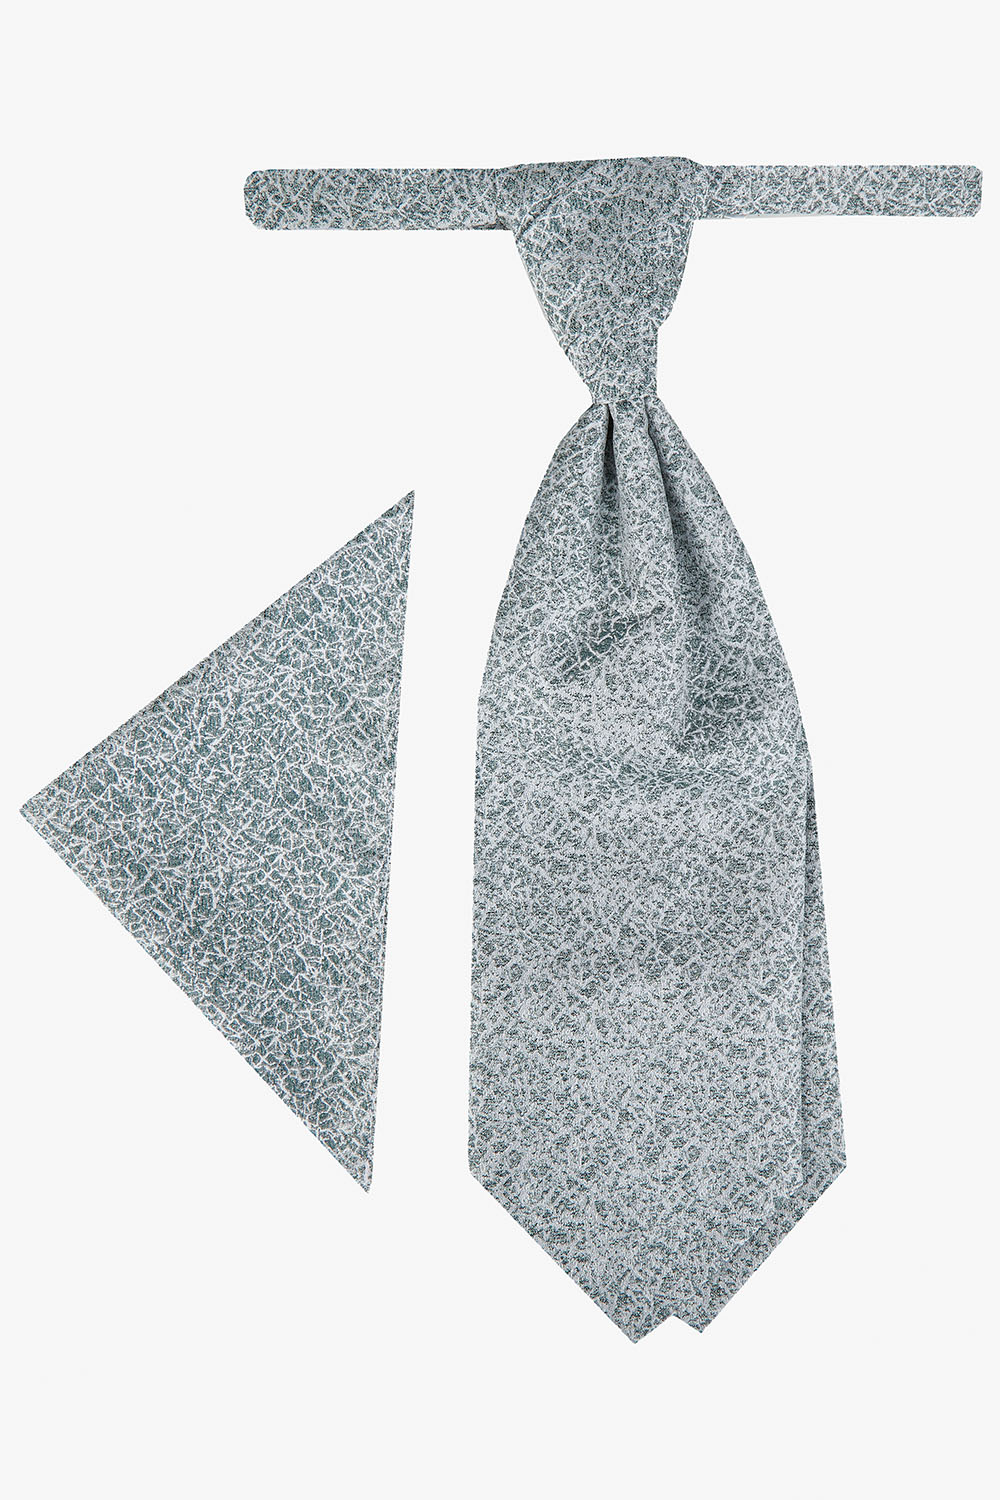 WILVORST sötétzöld francia nyakkendő szett 437103-40